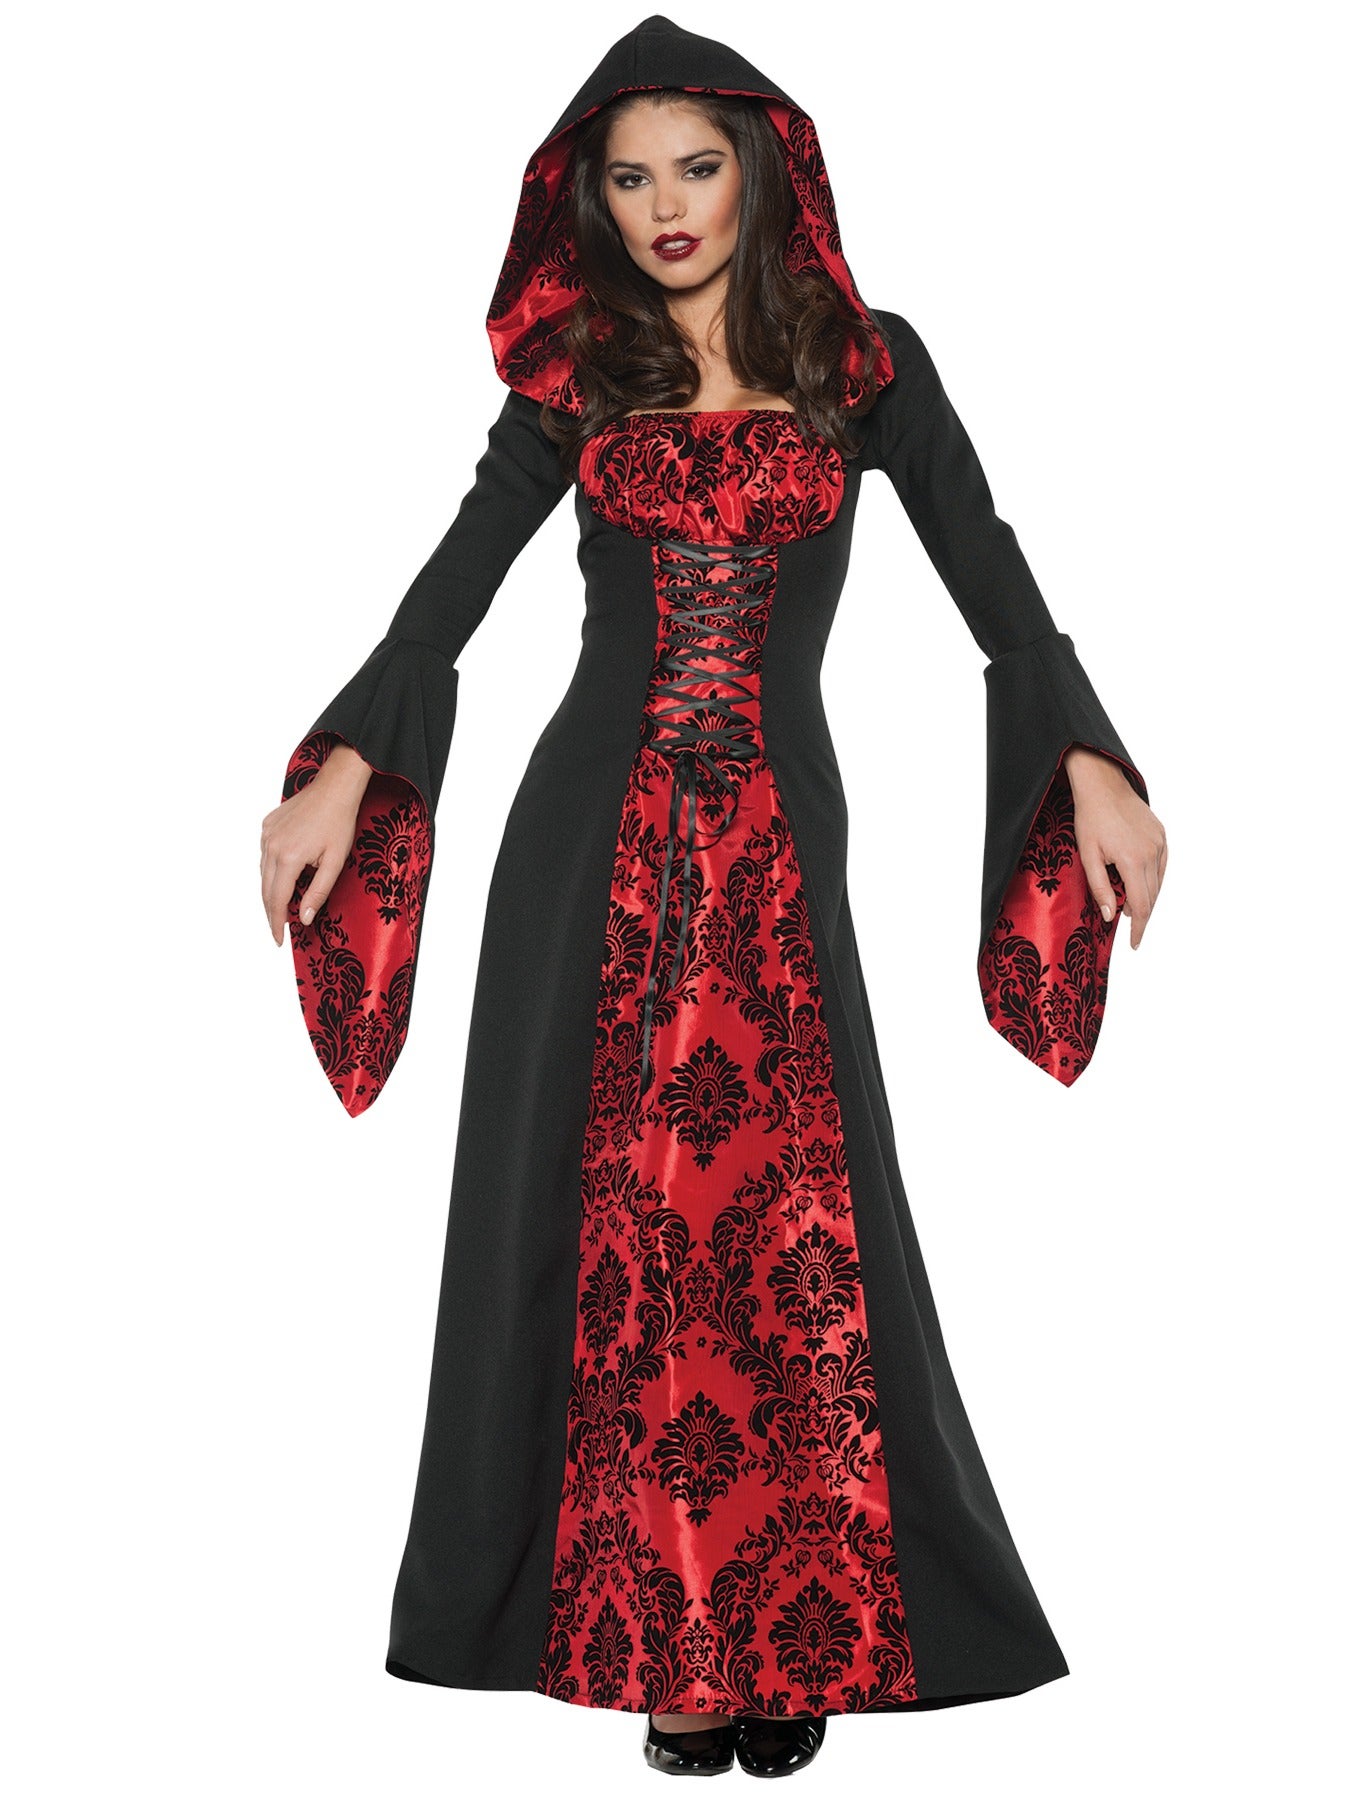 Hobbypos Scarlet Mistress Vampire Vampiress Twilight Deluxe Halloween Women Costume